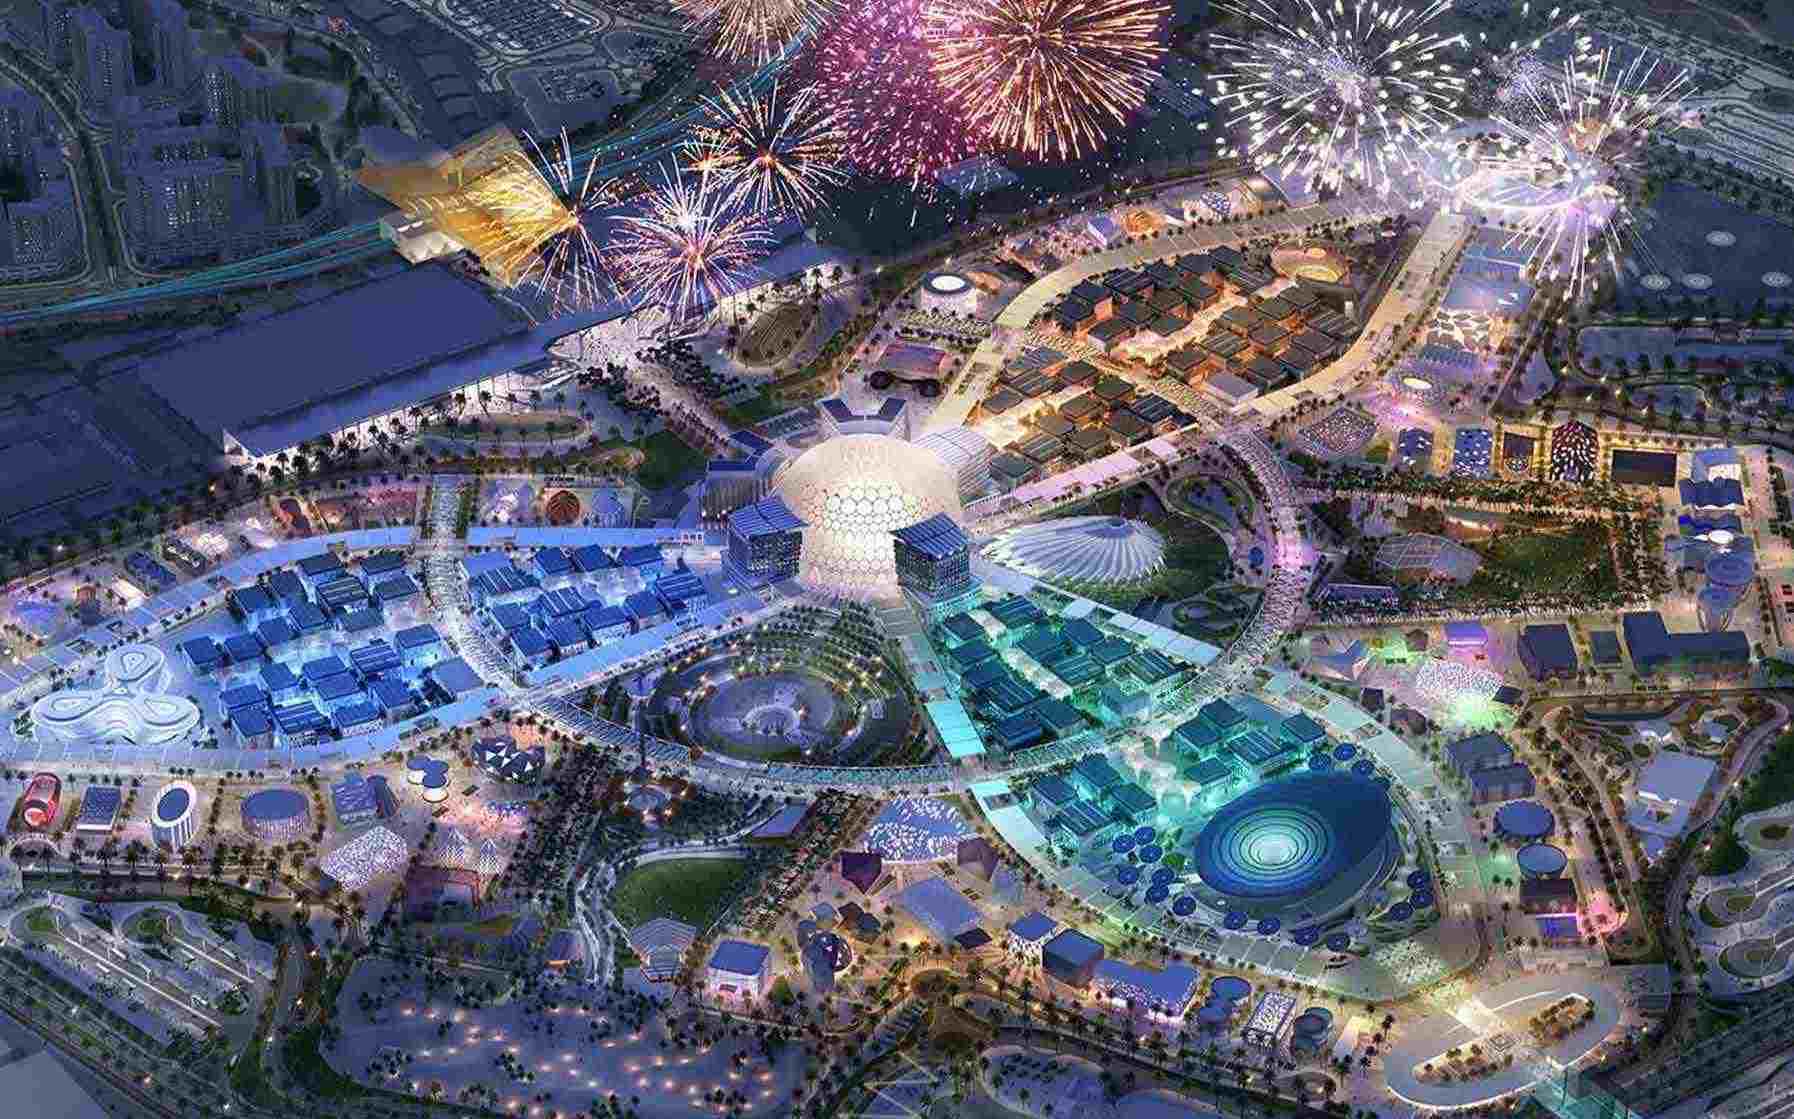 View at Expo 2020 at night